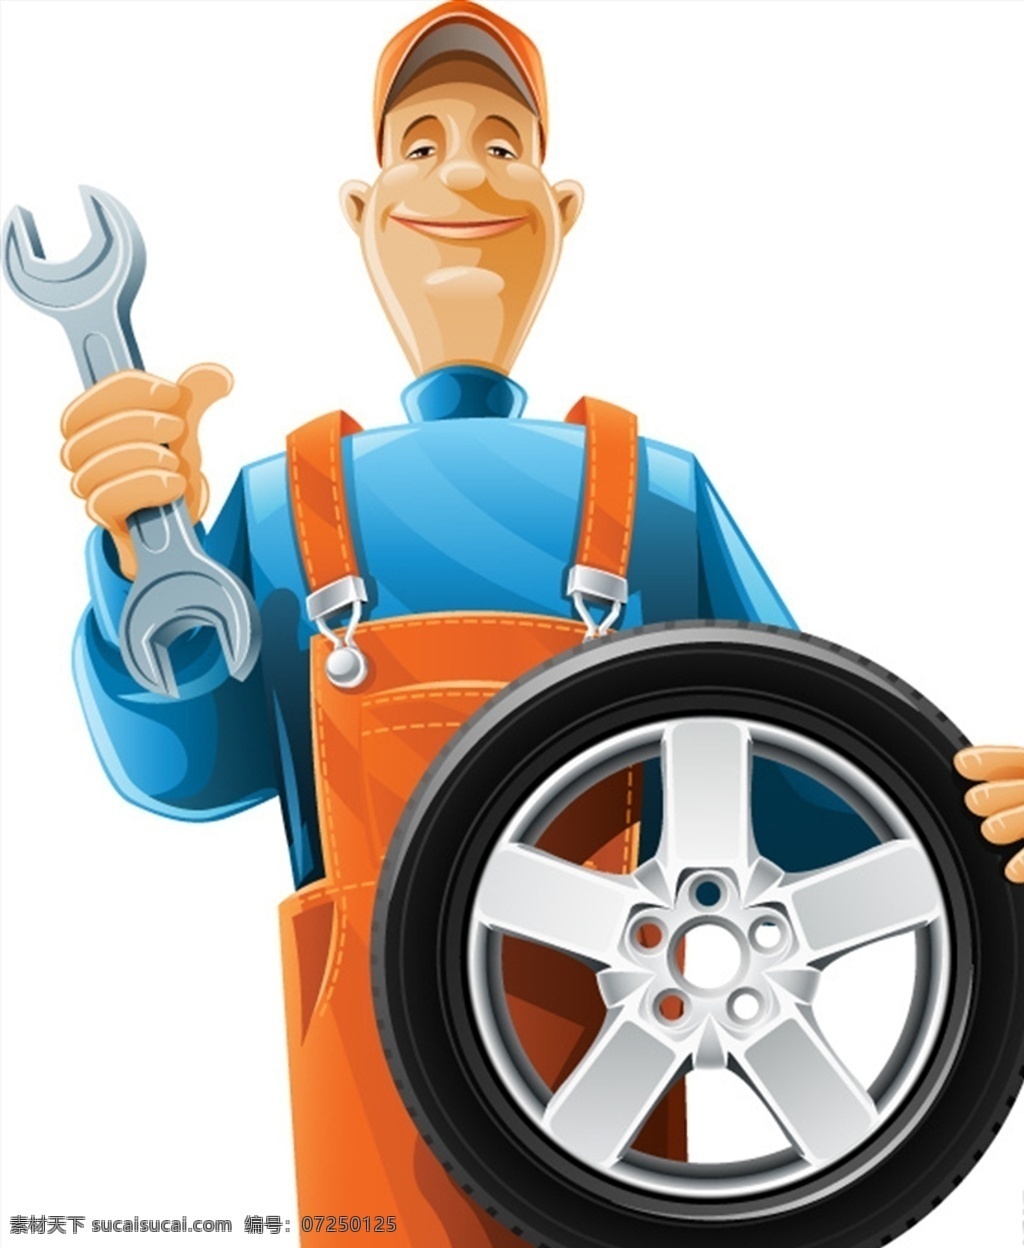 汽车修理工 汽车 修理工 轮胎 扳手 卡通 动漫动画 动漫人物